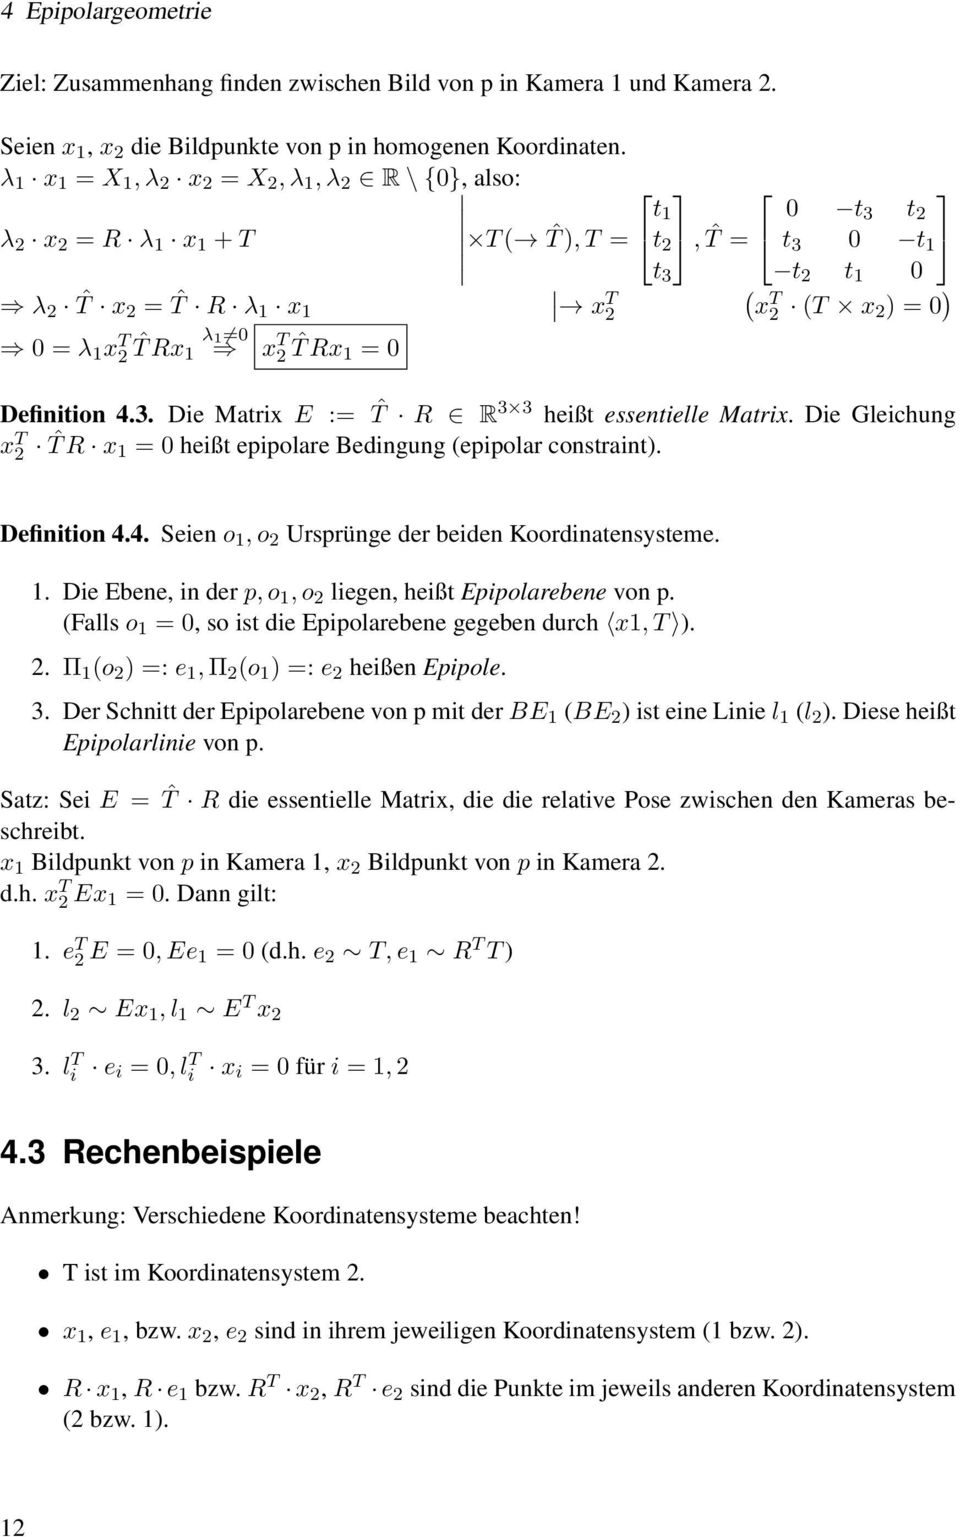 ˆT Rx 1 λ 1 x T 2 ˆT Rx 1 = Definition 4.3. Die Matrix E := ˆT R R 3 3 heißt essentielle Matrix. Die Gleichung x T 2 ˆT R x 1 = heißt epipolare Bedingung (epipolar constraint). Definition 4.4. Seien o 1, o 2 Ursprünge der beiden Koordinatensysteme.